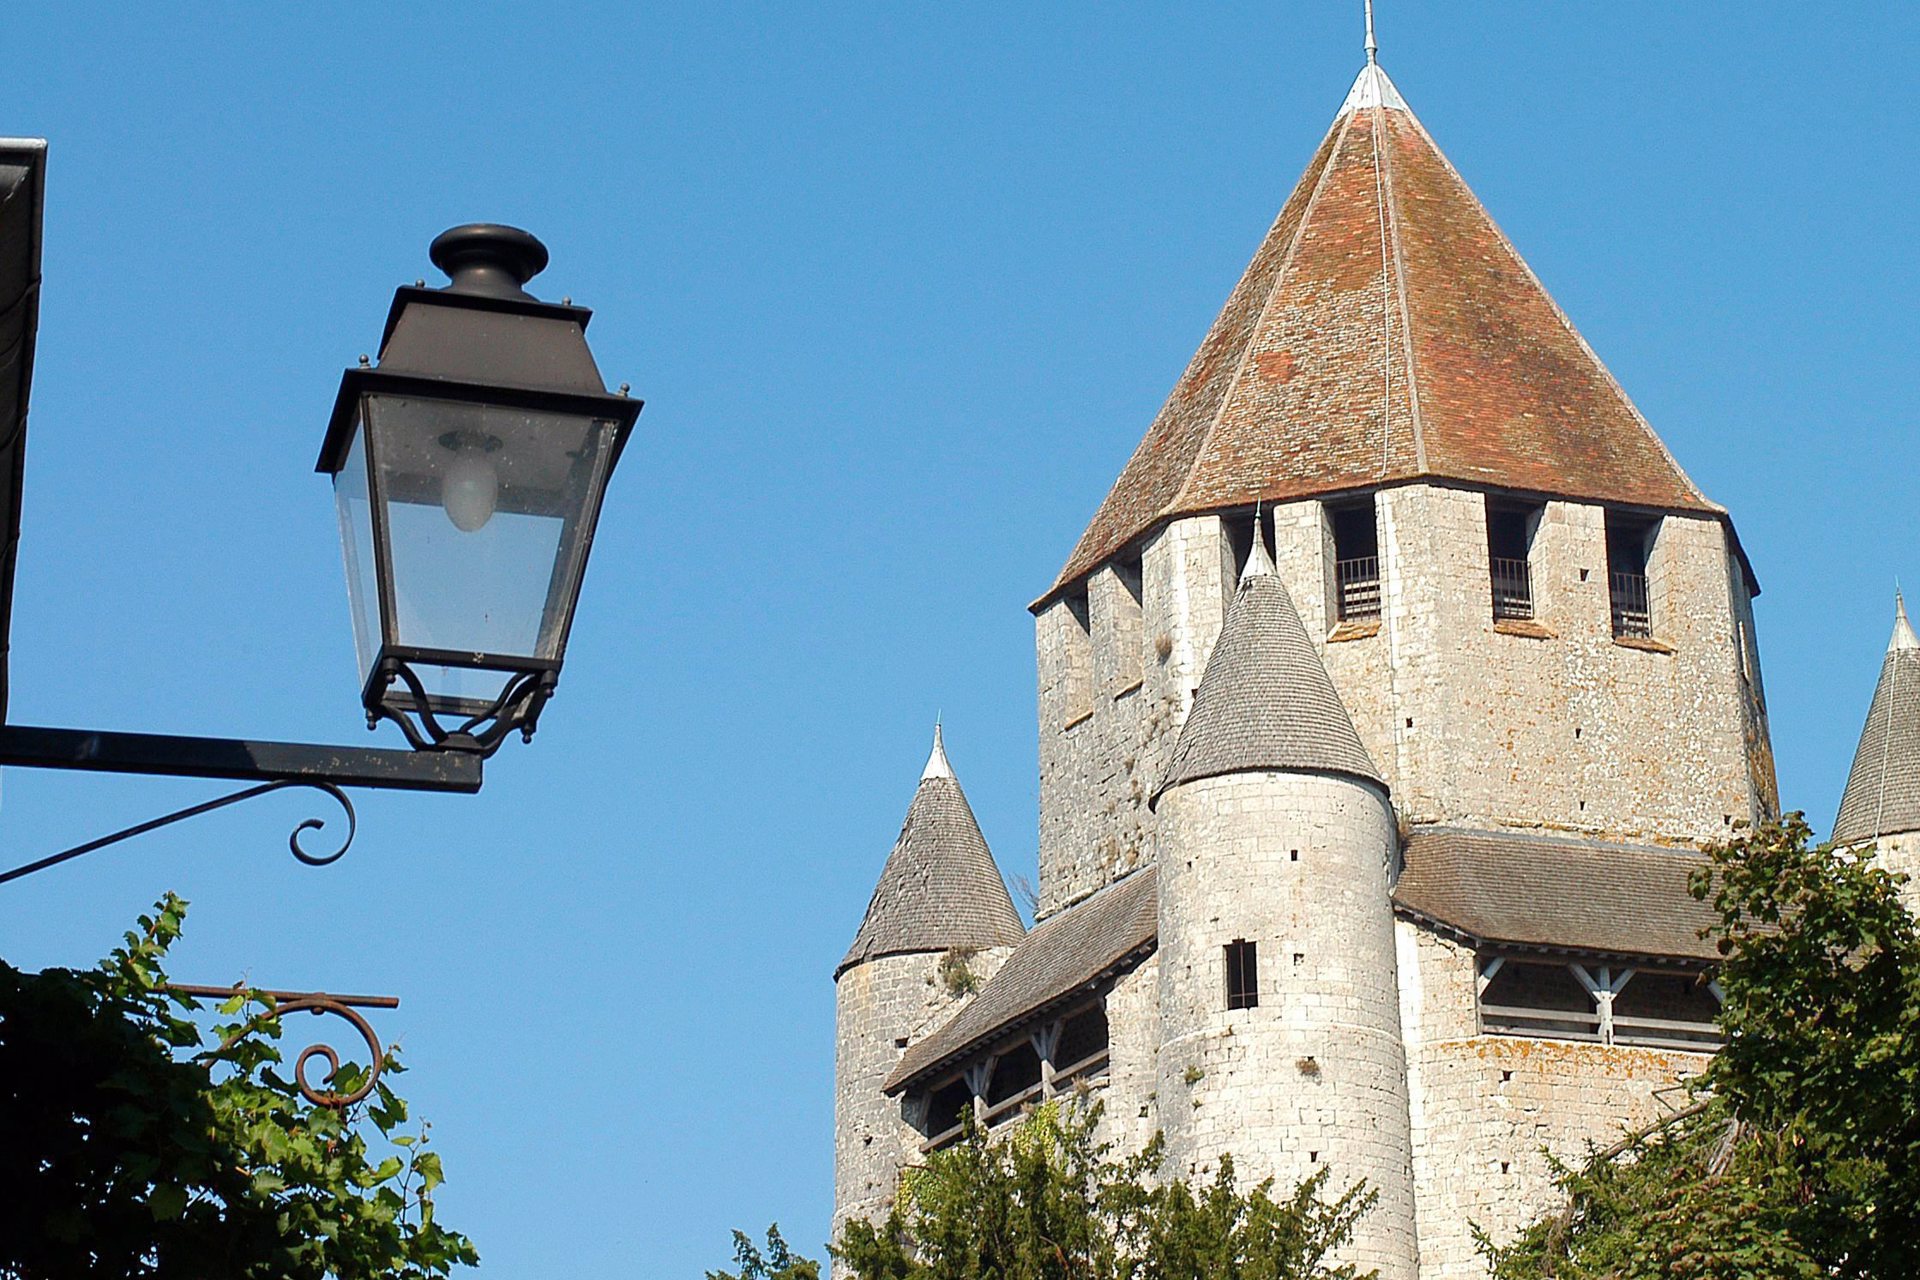 Vakantie Provins - Middeleeuwen herbeleven in Frankrijk | TUI